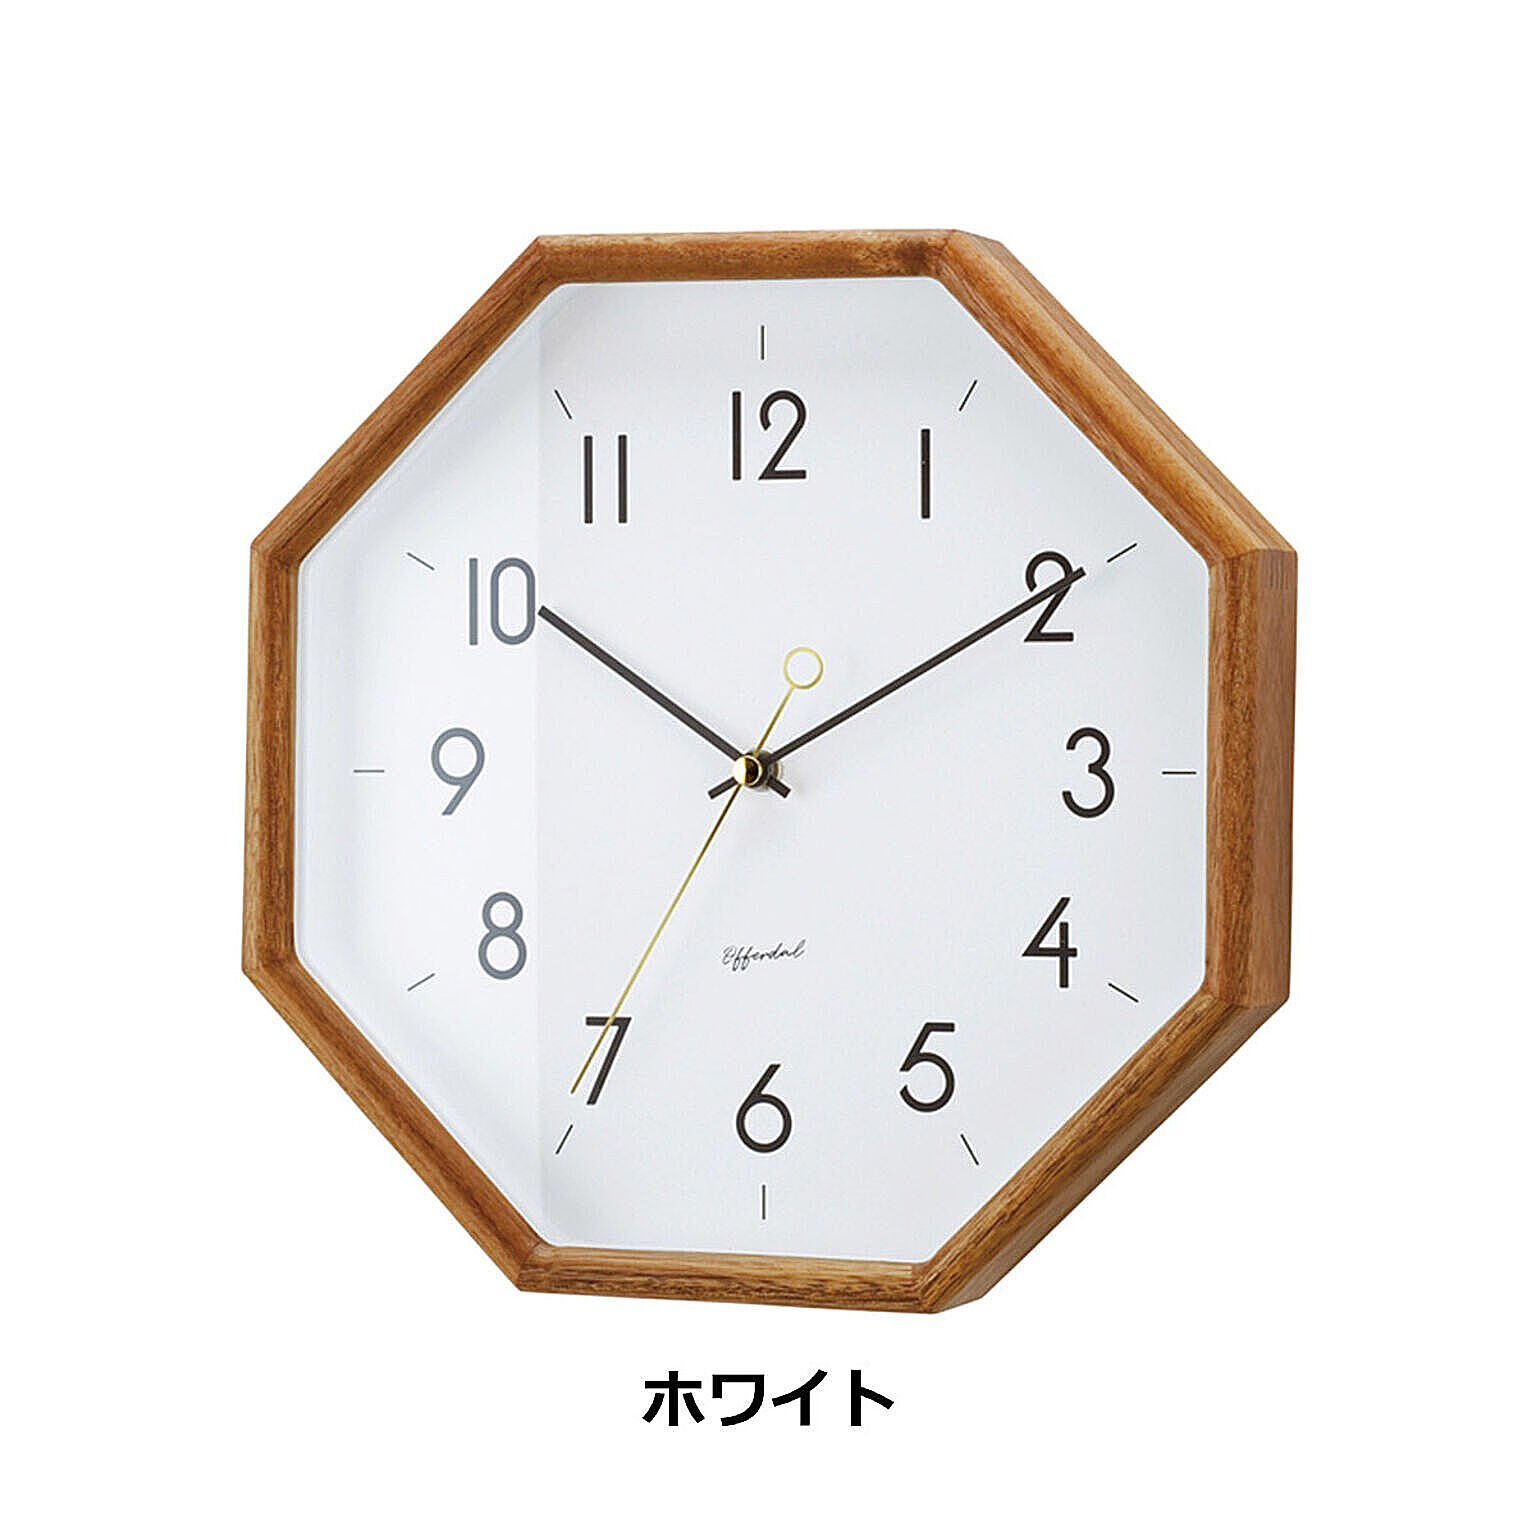 壁掛け時計 おしゃれ 時計 壁掛け 北欧 掛け時計 木製 八角形 ヘンリット Henrit CL-4089 リビング ダイニング 寝室 ウォールクロック シンプル ミッドセンチュリー ナチュラル